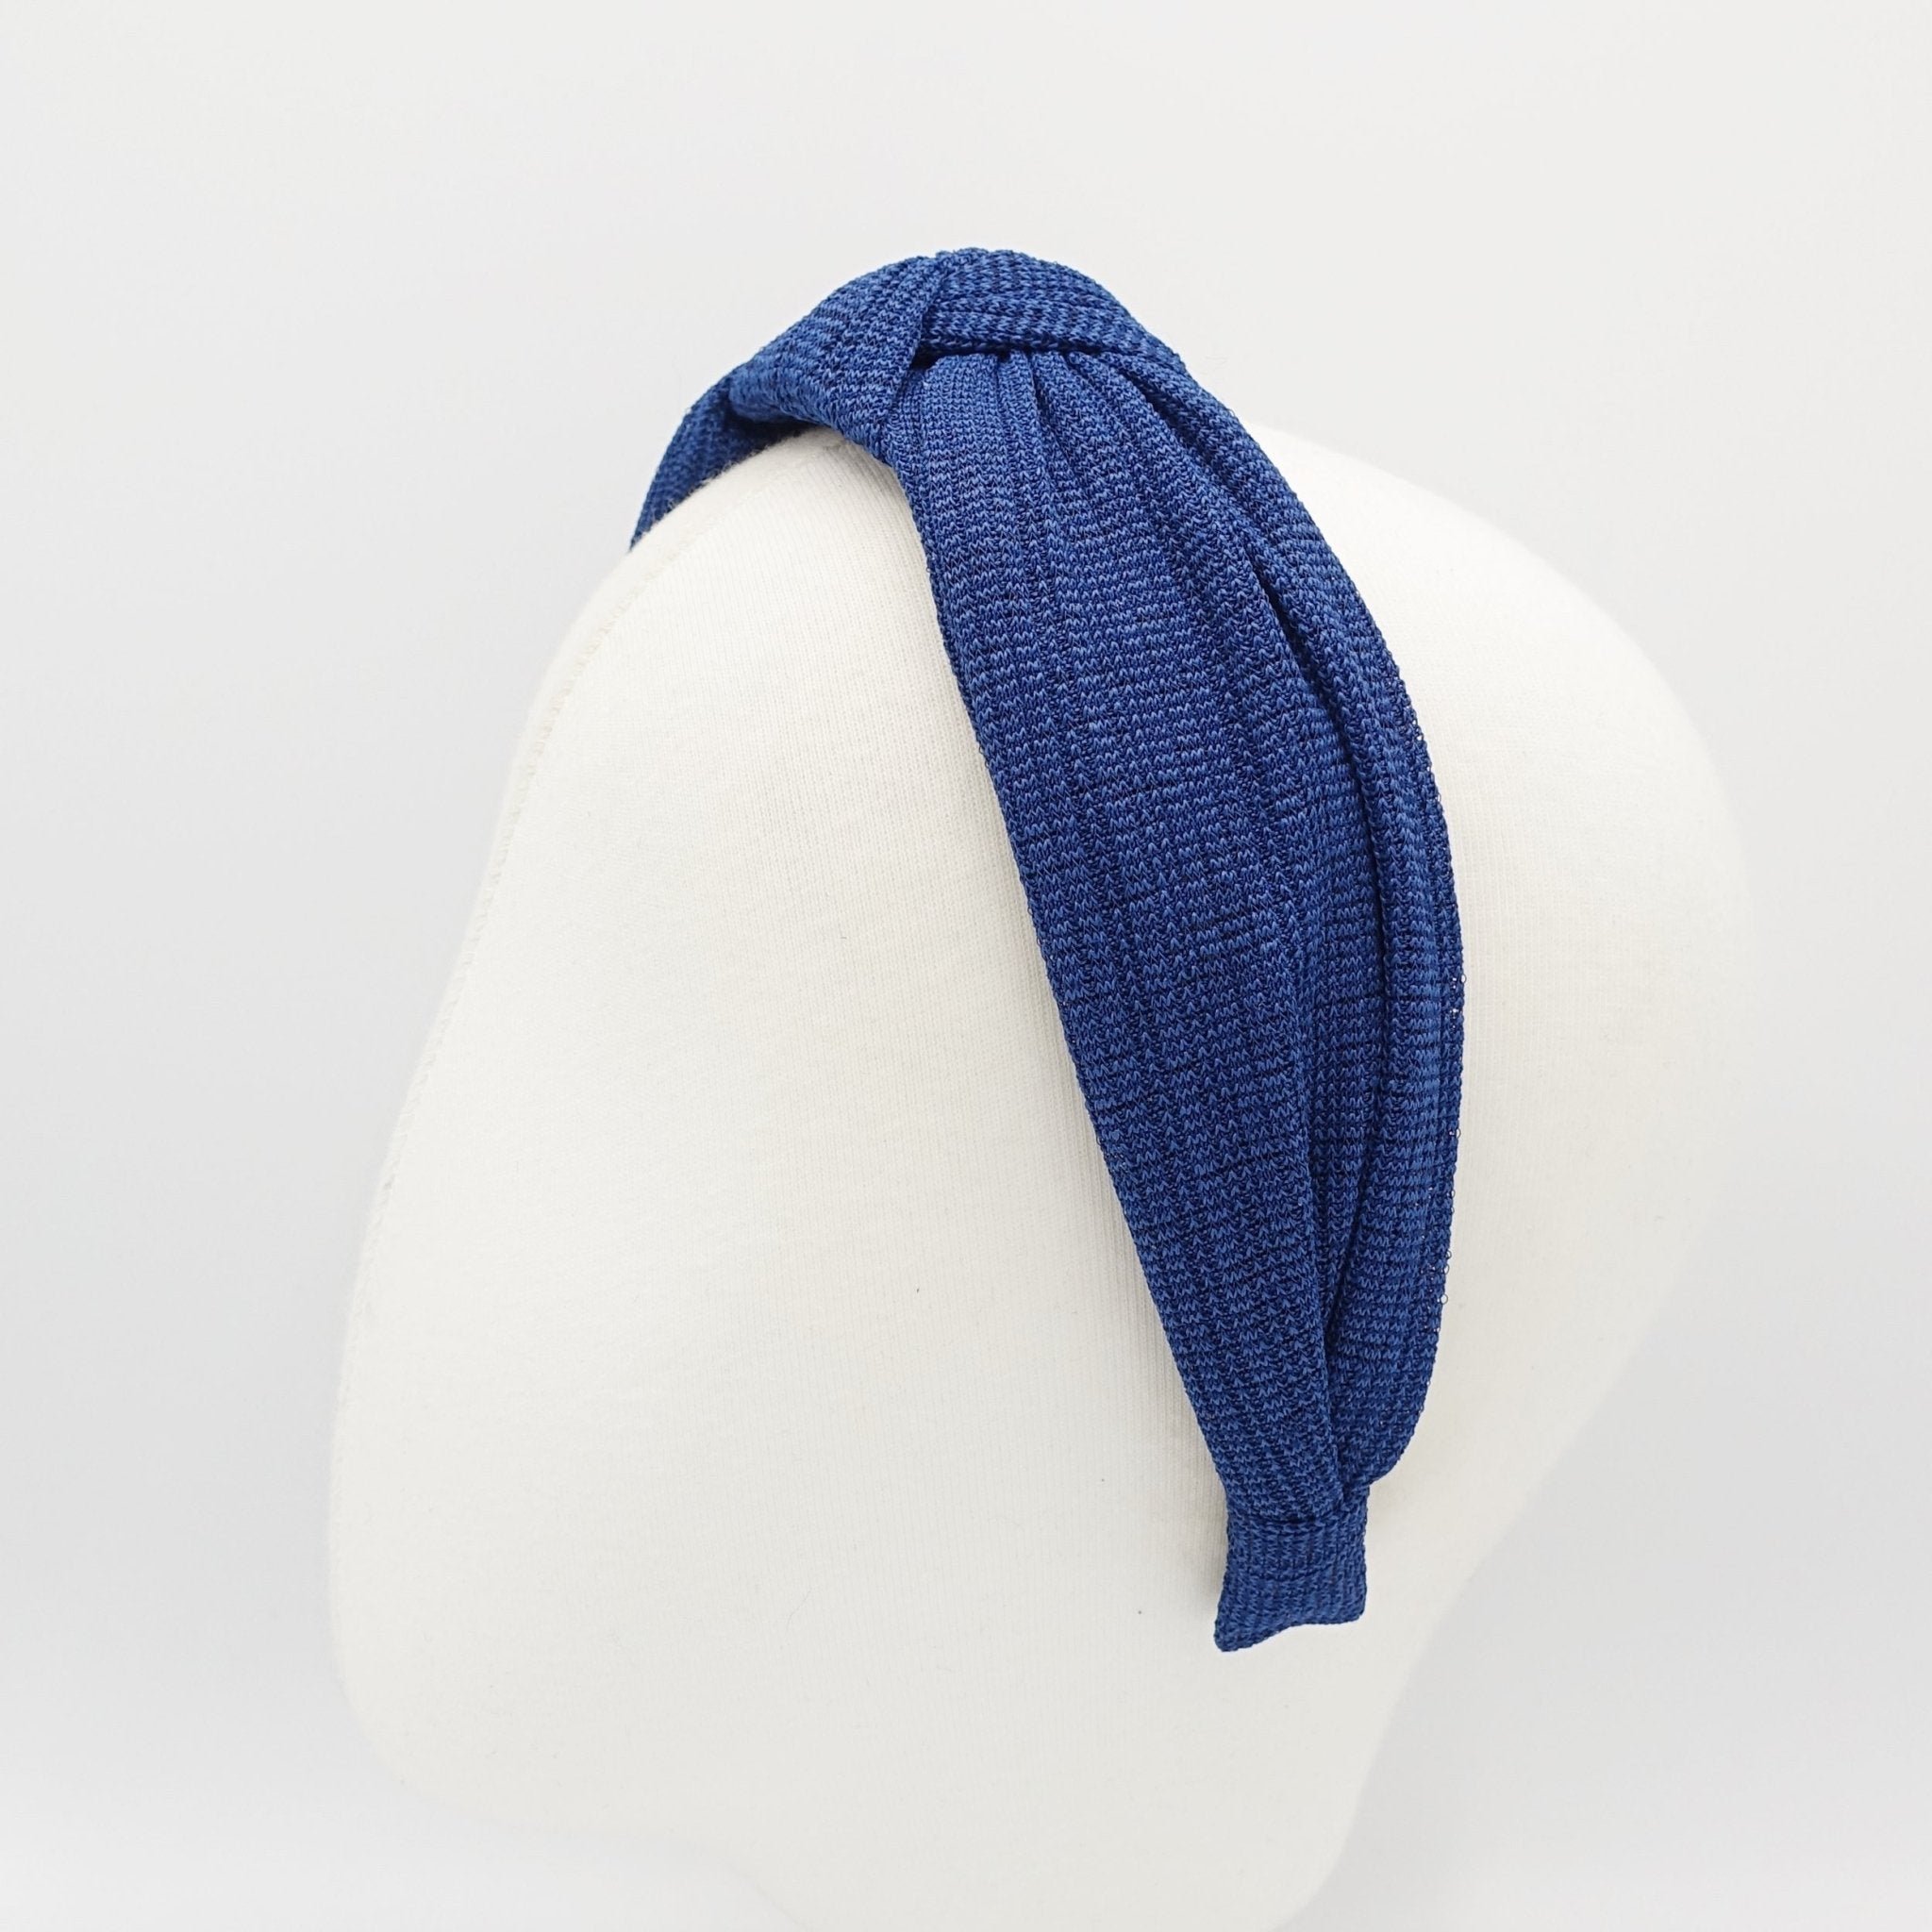 veryshine.com Headbands & Turbans Navy corrugated thin fabric headband knot hairband woman hair accessory